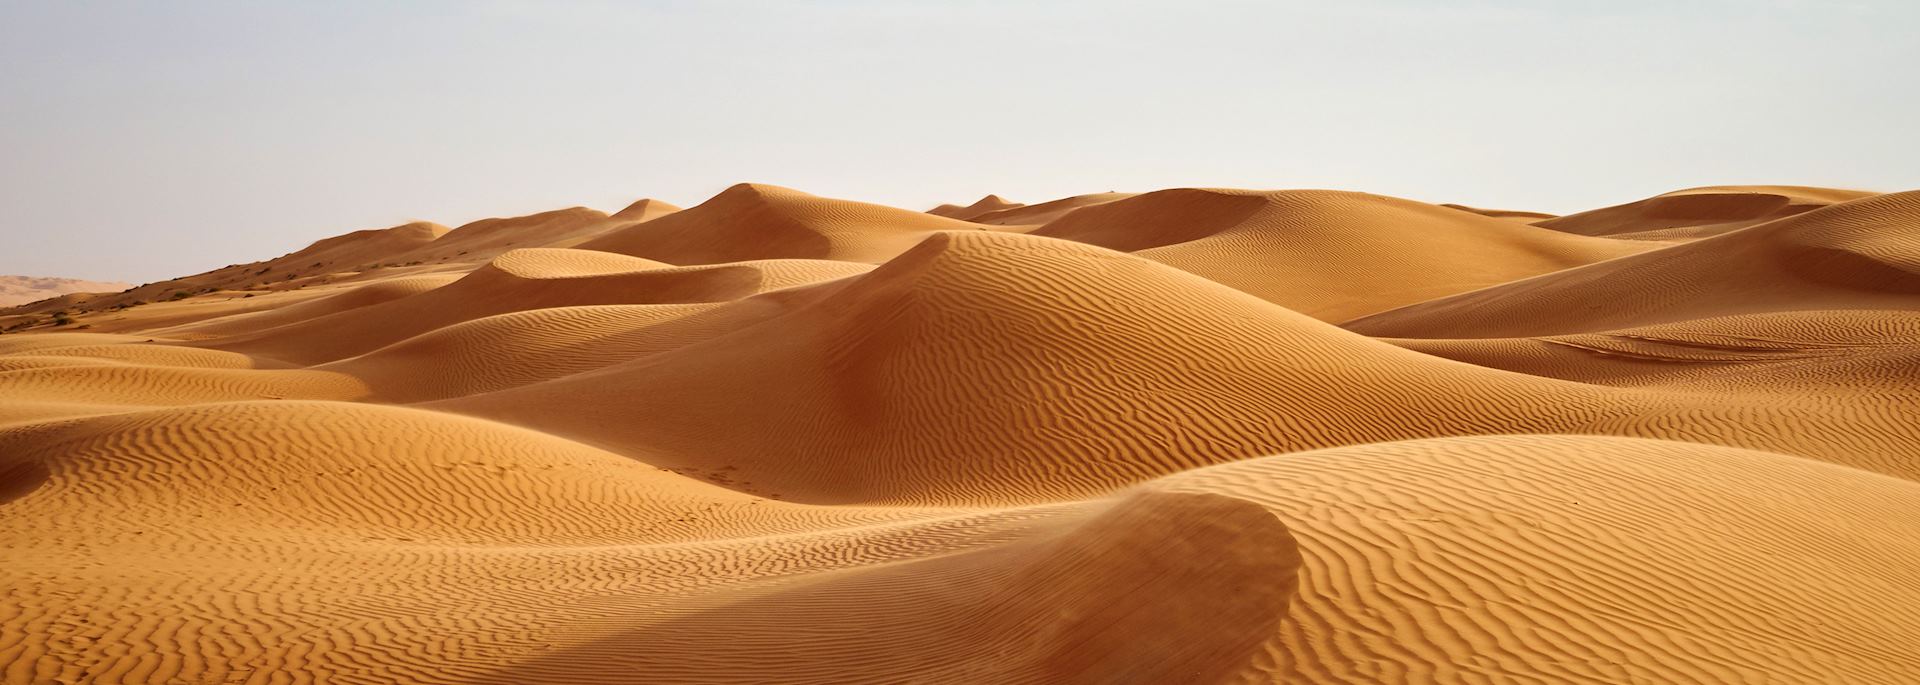 Desert dunes in Oman's Empty Quarter